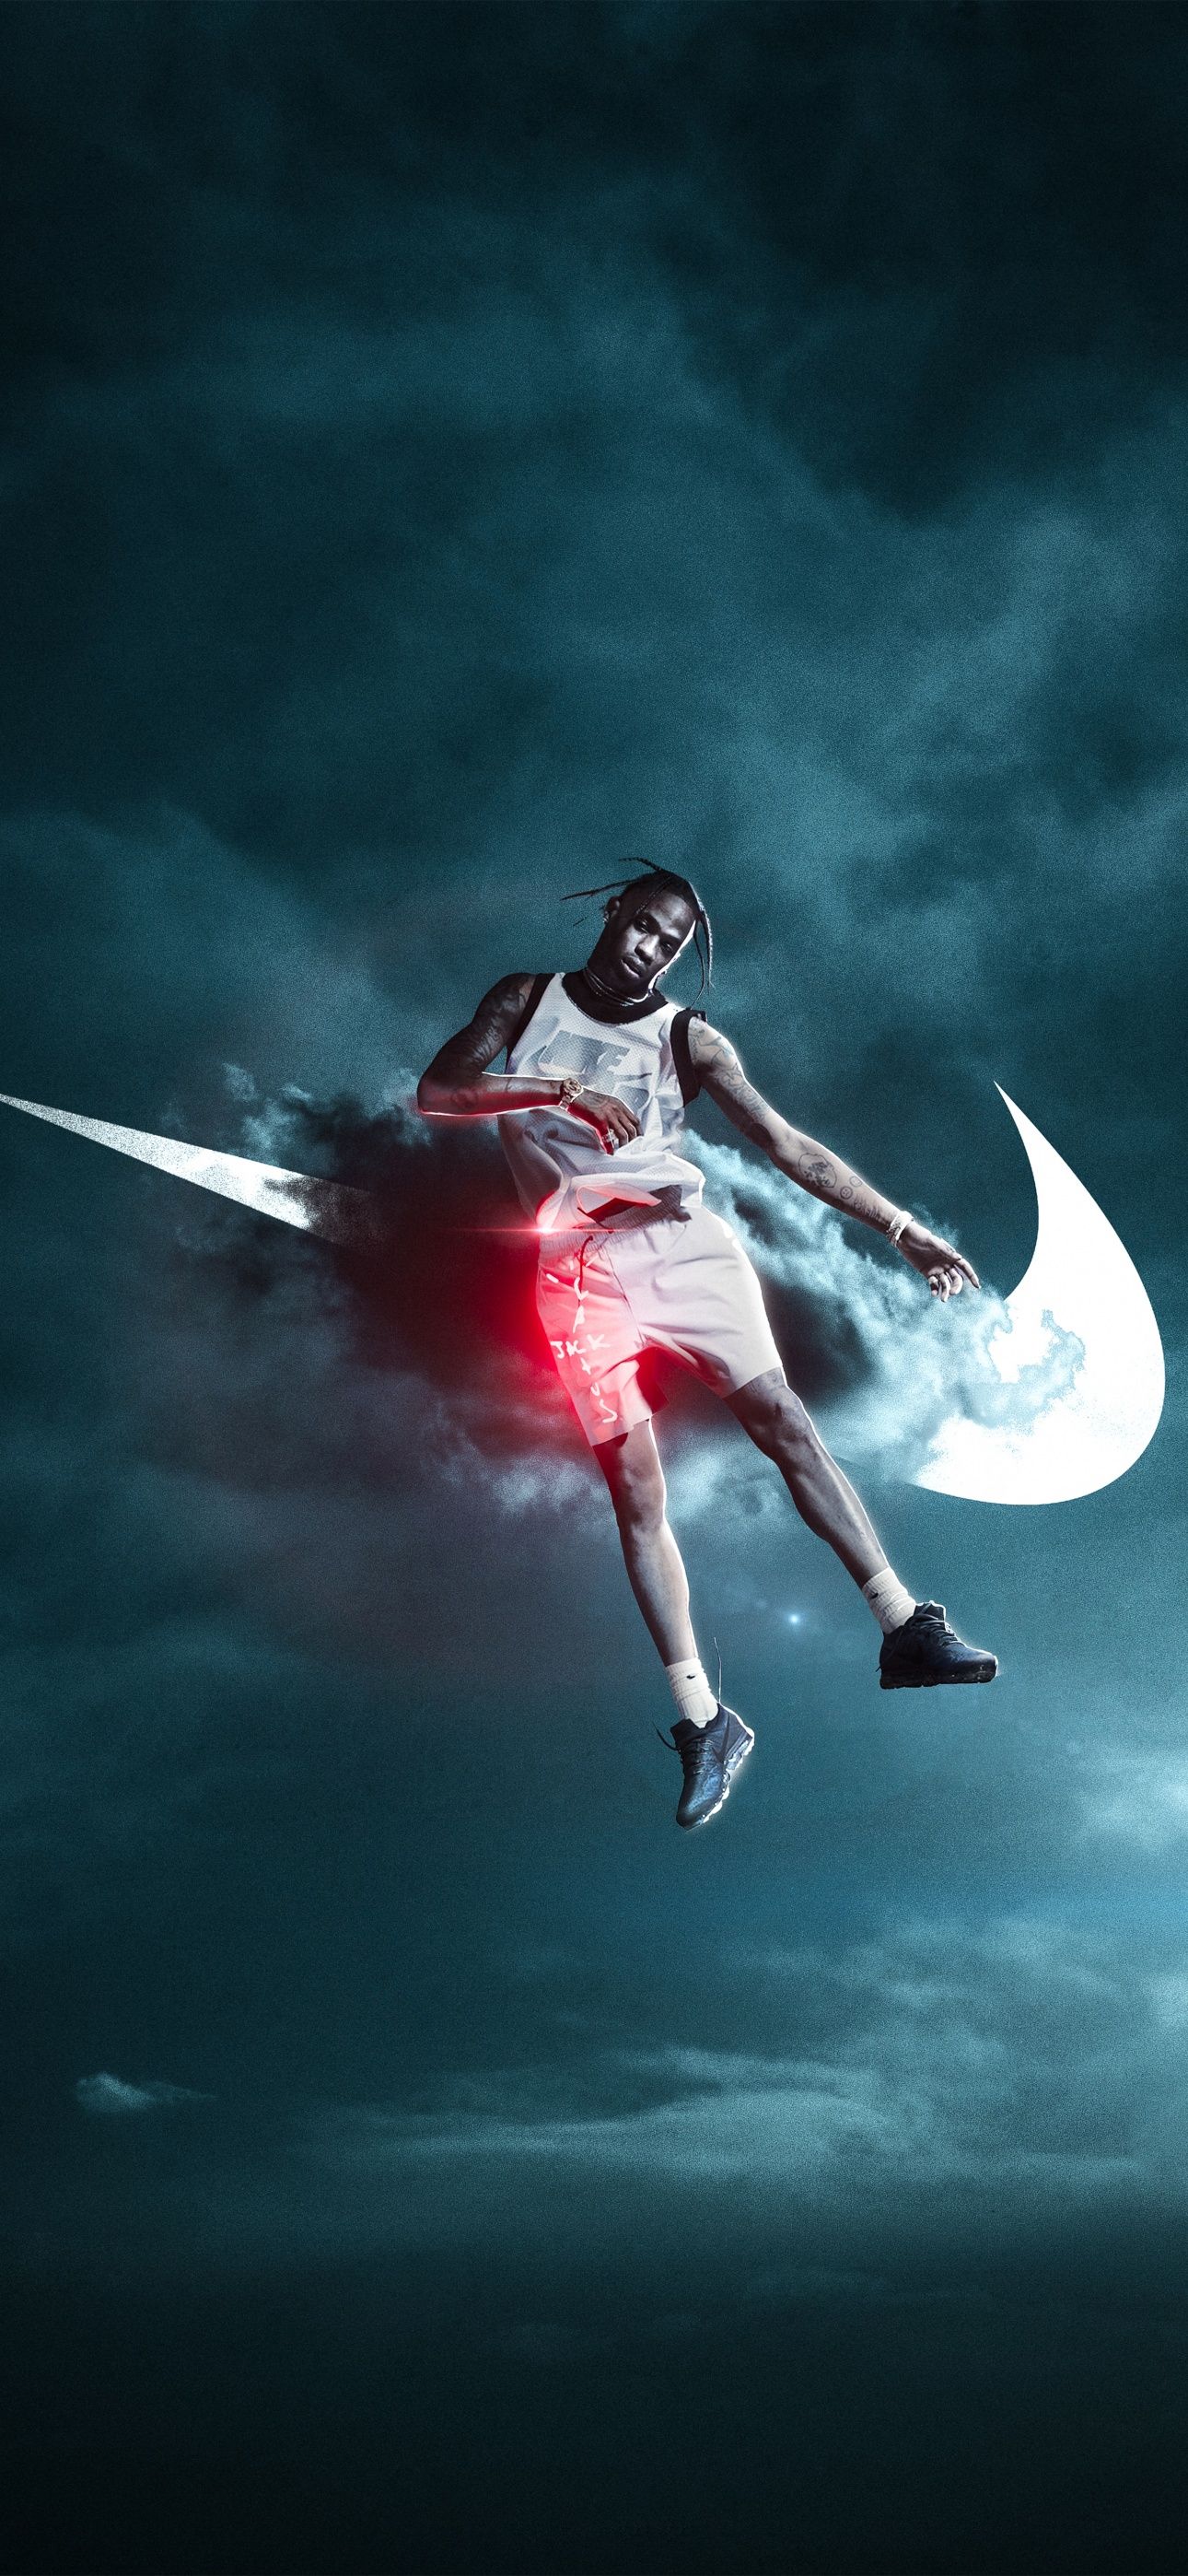 Travis Scott Wallpaper 4K, Nike, American rapper